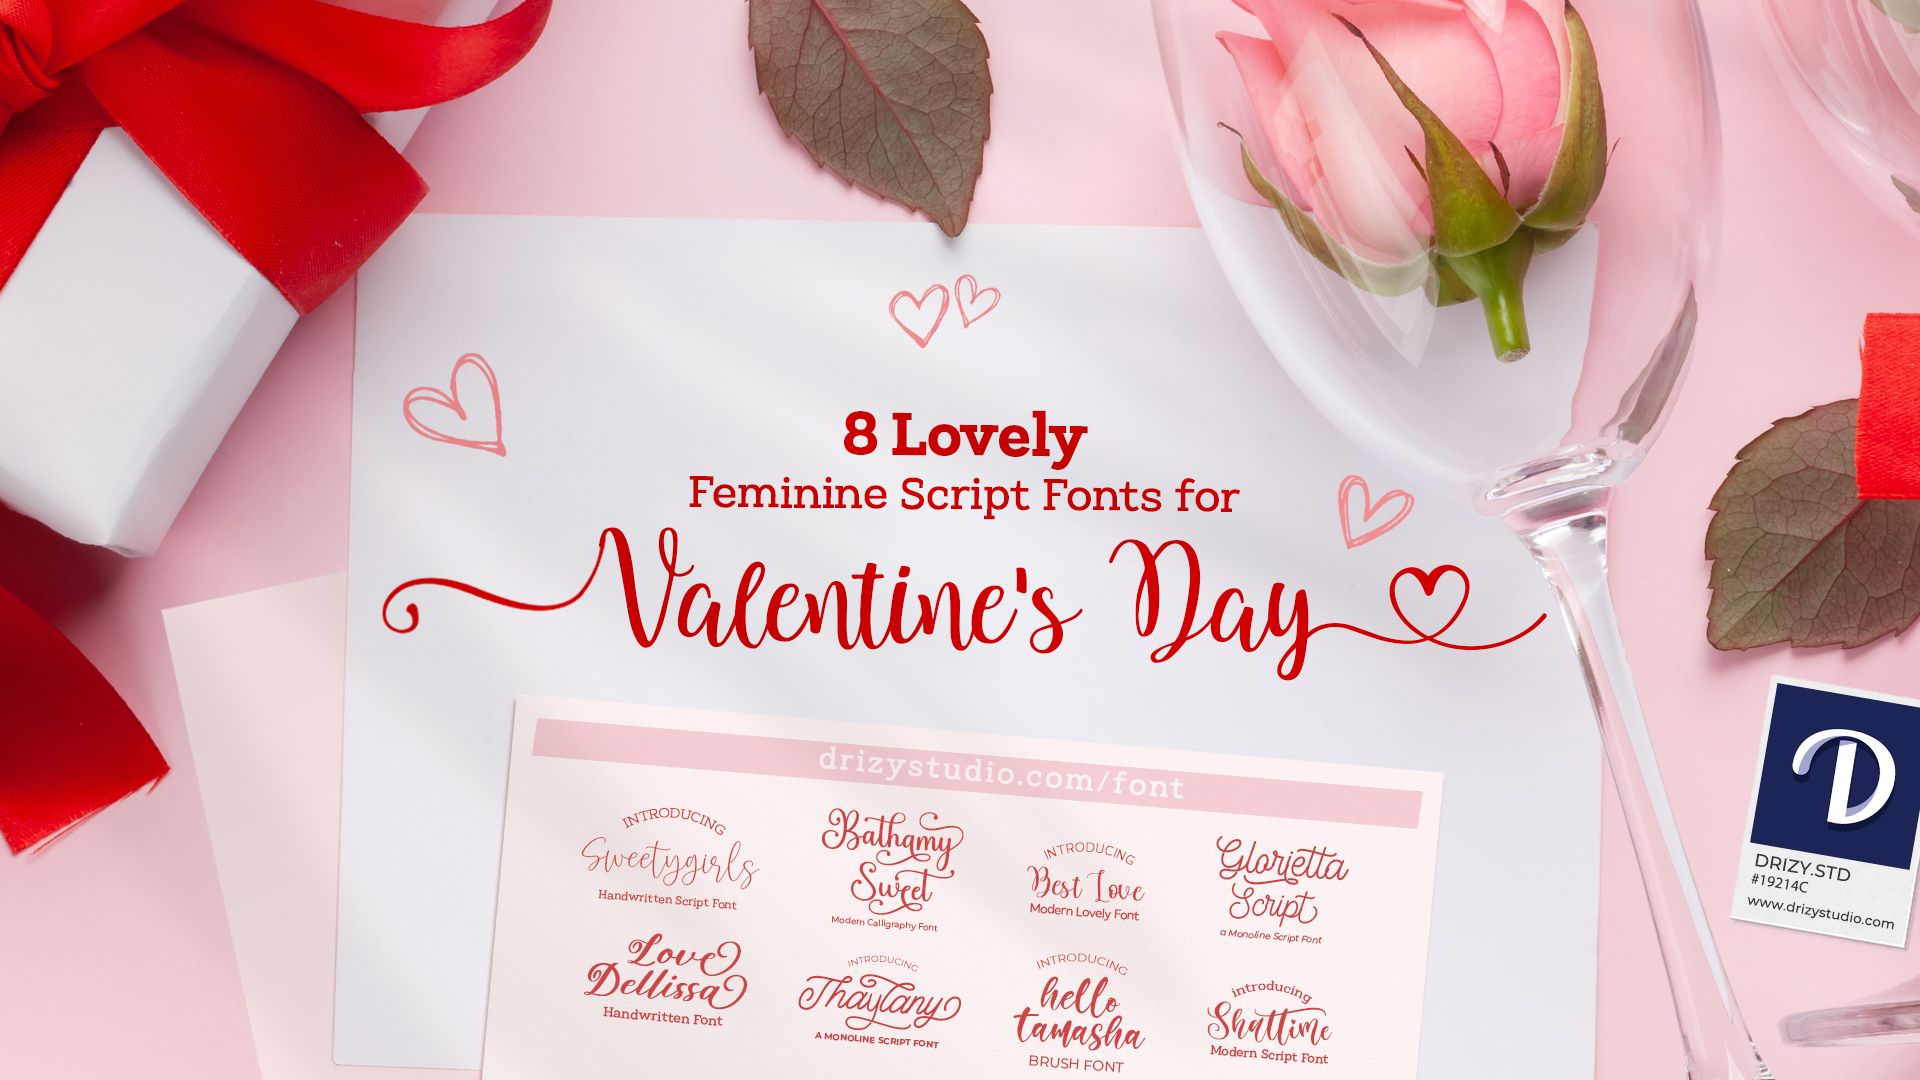 8 Lovely Feminine Script Fonts for Valentines Day COVER